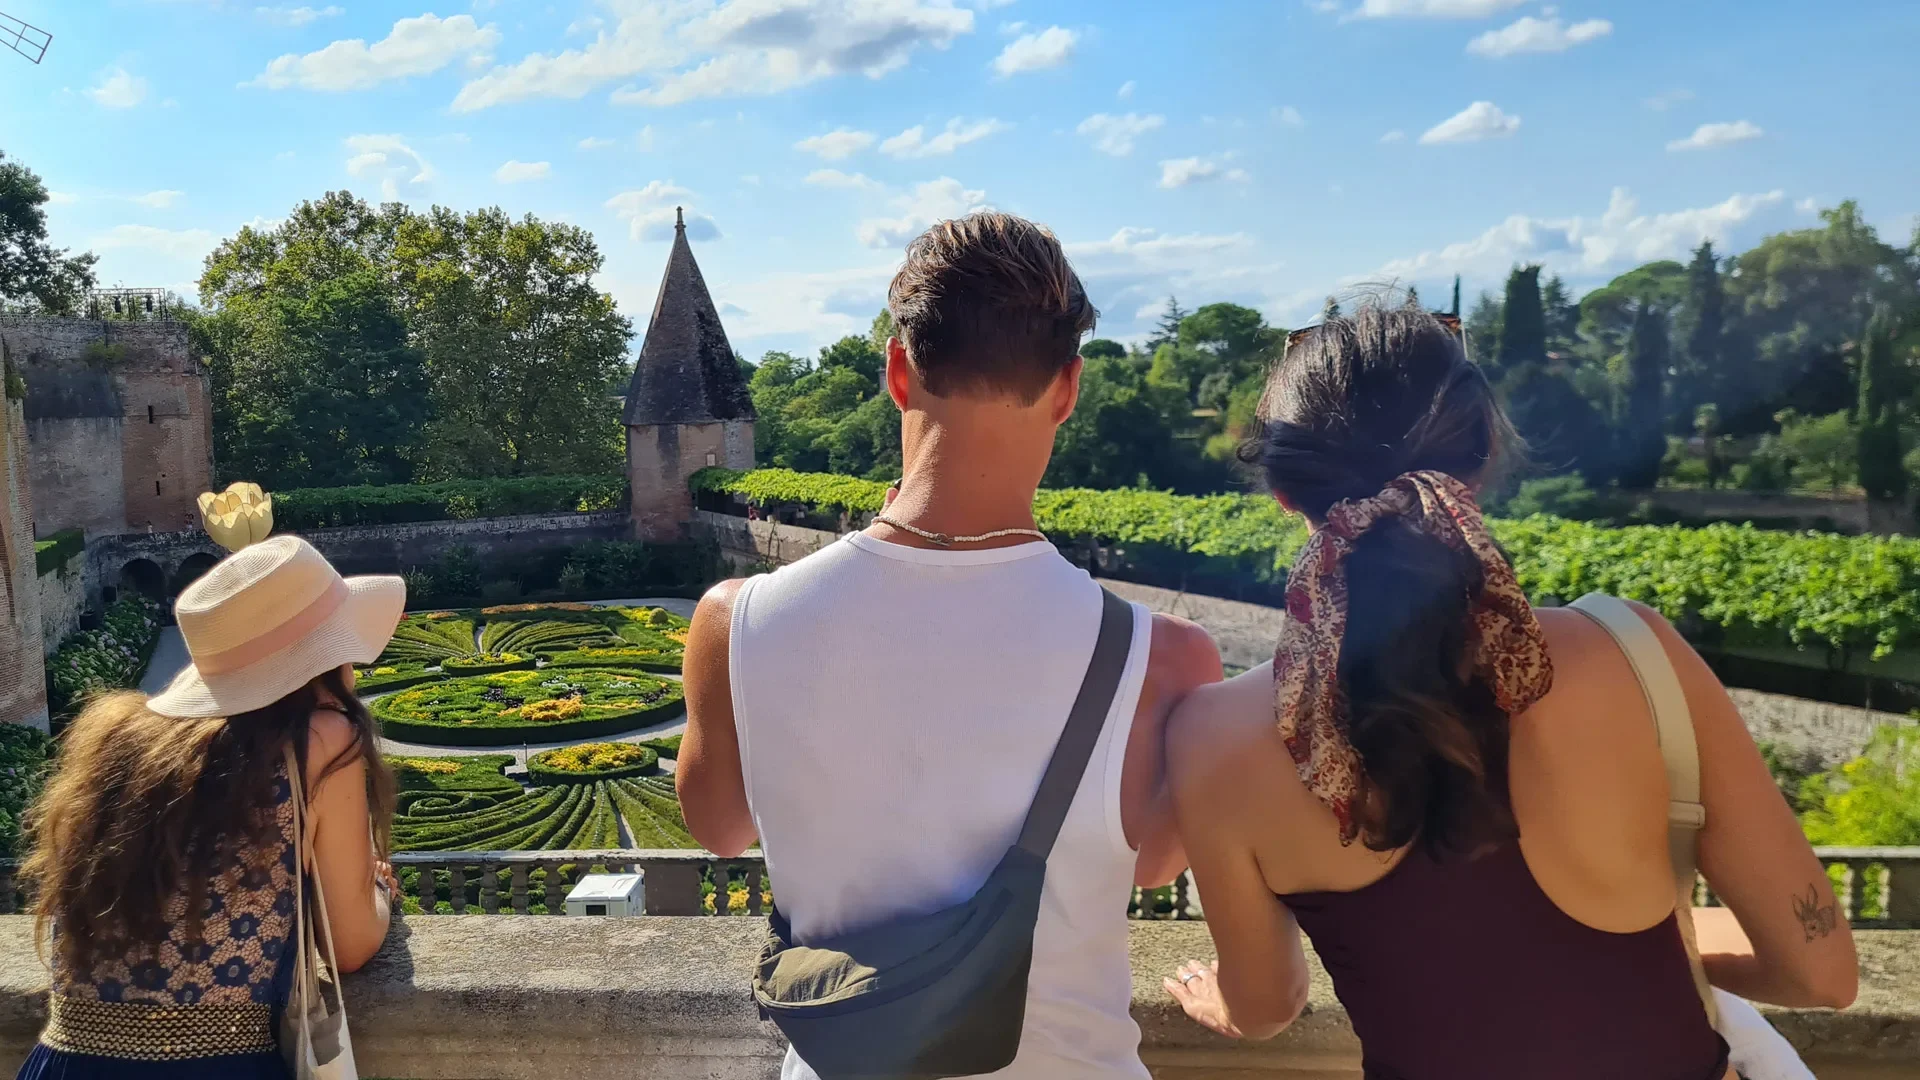 Met vrienden, als koppel, met familie op bezoek en logeren in Albi: tips van Cécile en Henri